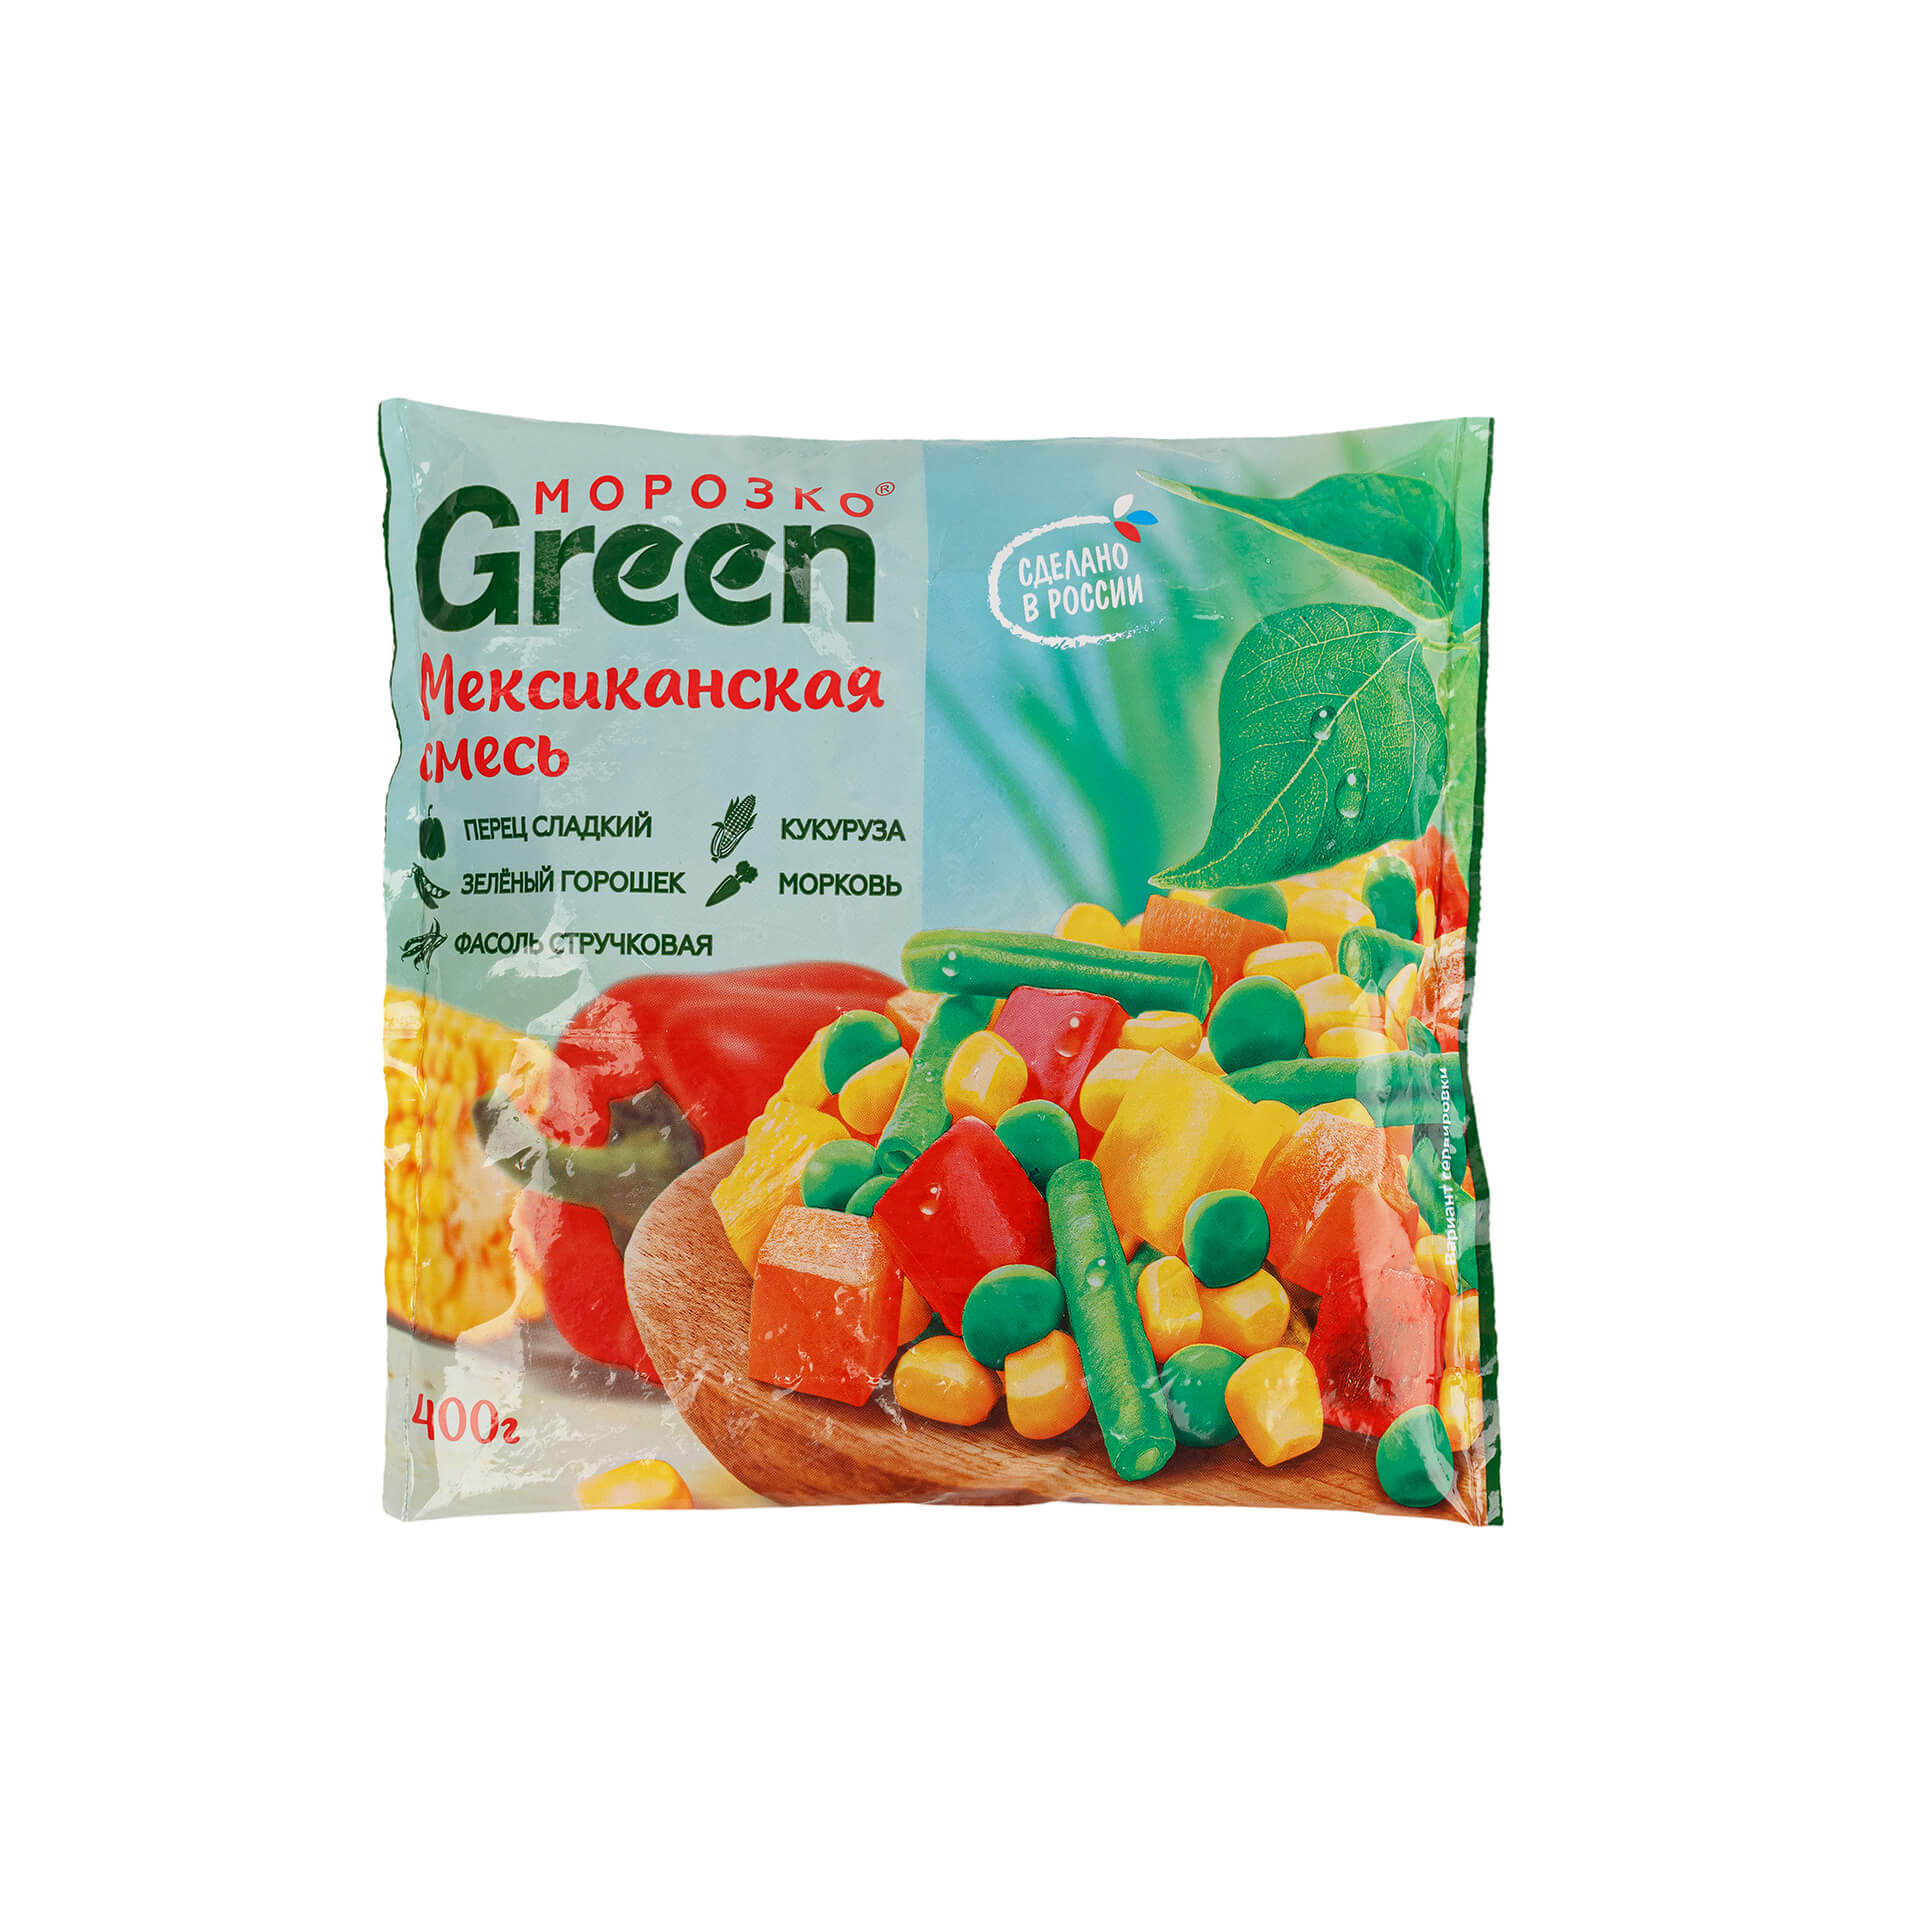 Быстрозамороженная овощная смесь "Мексиканская смесь" Морозко Green 400 г 8214LED, общий вид, купить оптом с доставкой по москве и московской области, недорого, низкая цена